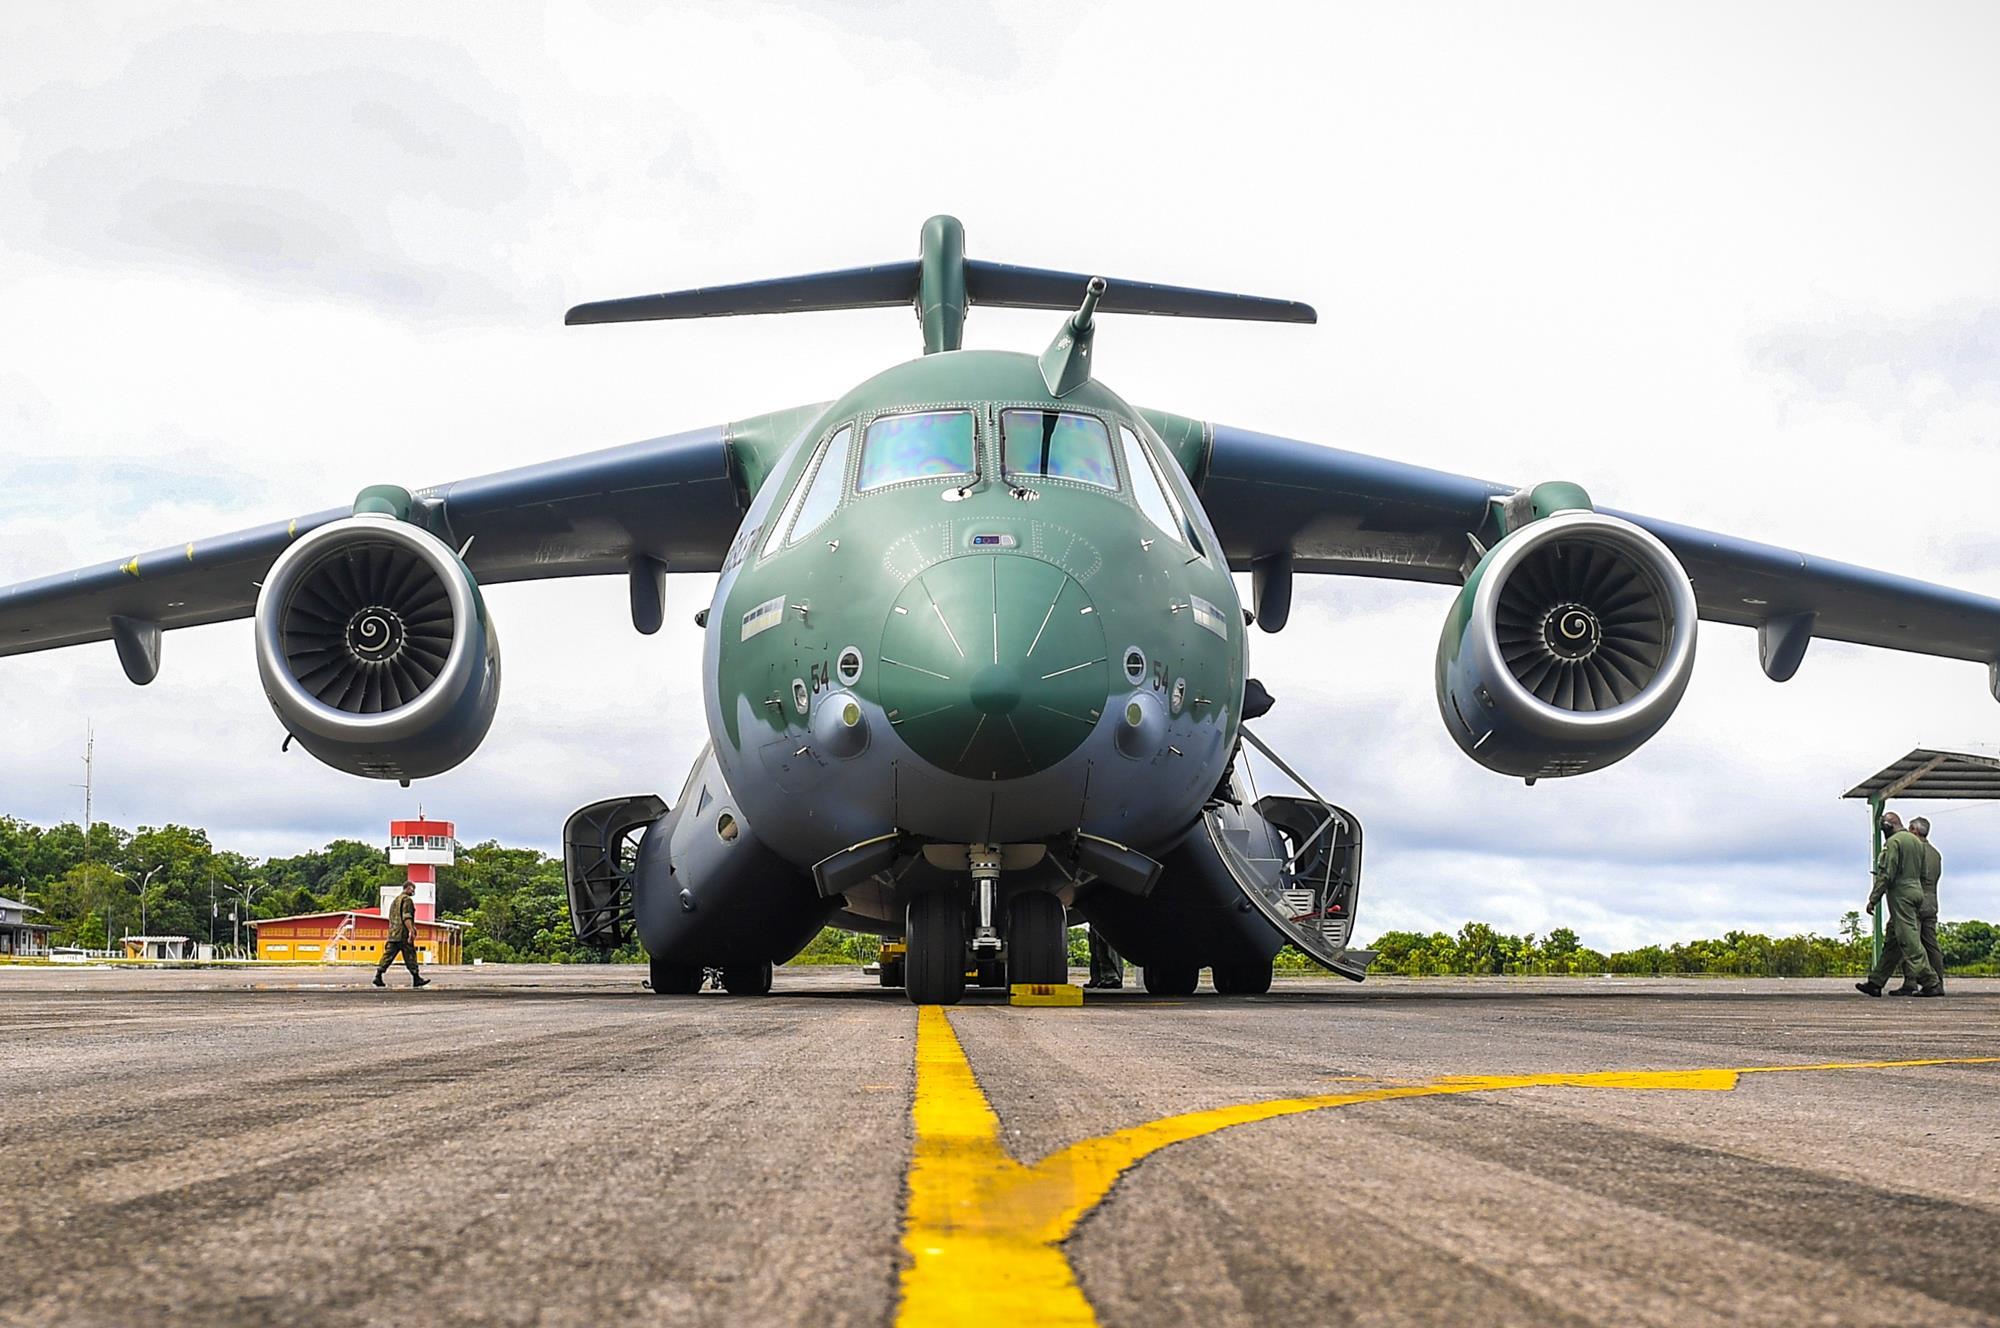 Μορφή «χιονοστιβάδας» παίρνουν οι παραγγελίες του C-390 – Πλήρης επικράτηση έναντι του C-130J σε όλους τους διαγωνισμούς